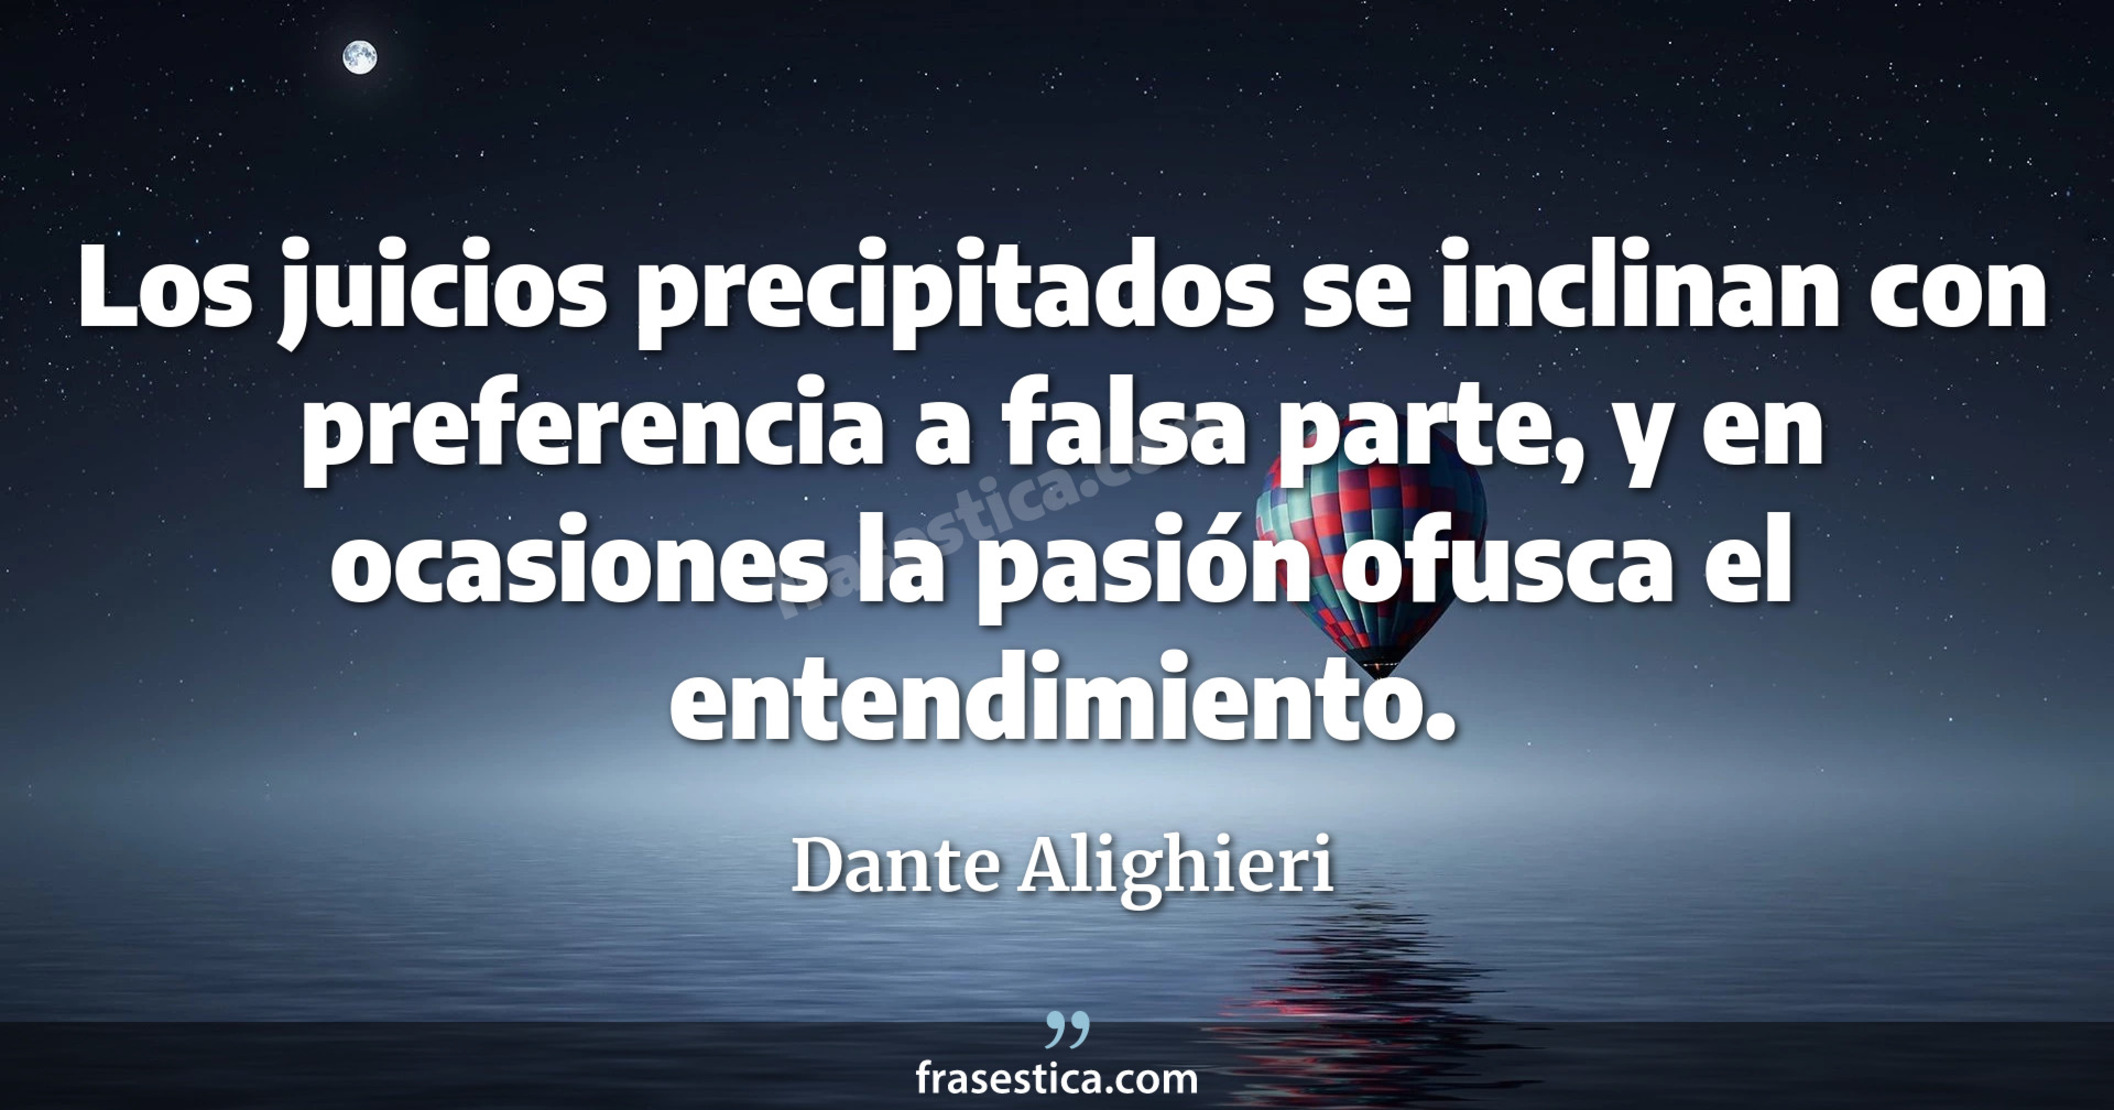 Los juicios precipitados se inclinan con preferencia a falsa parte, y en ocasiones la pasión ofusca el entendimiento. - Dante Alighieri